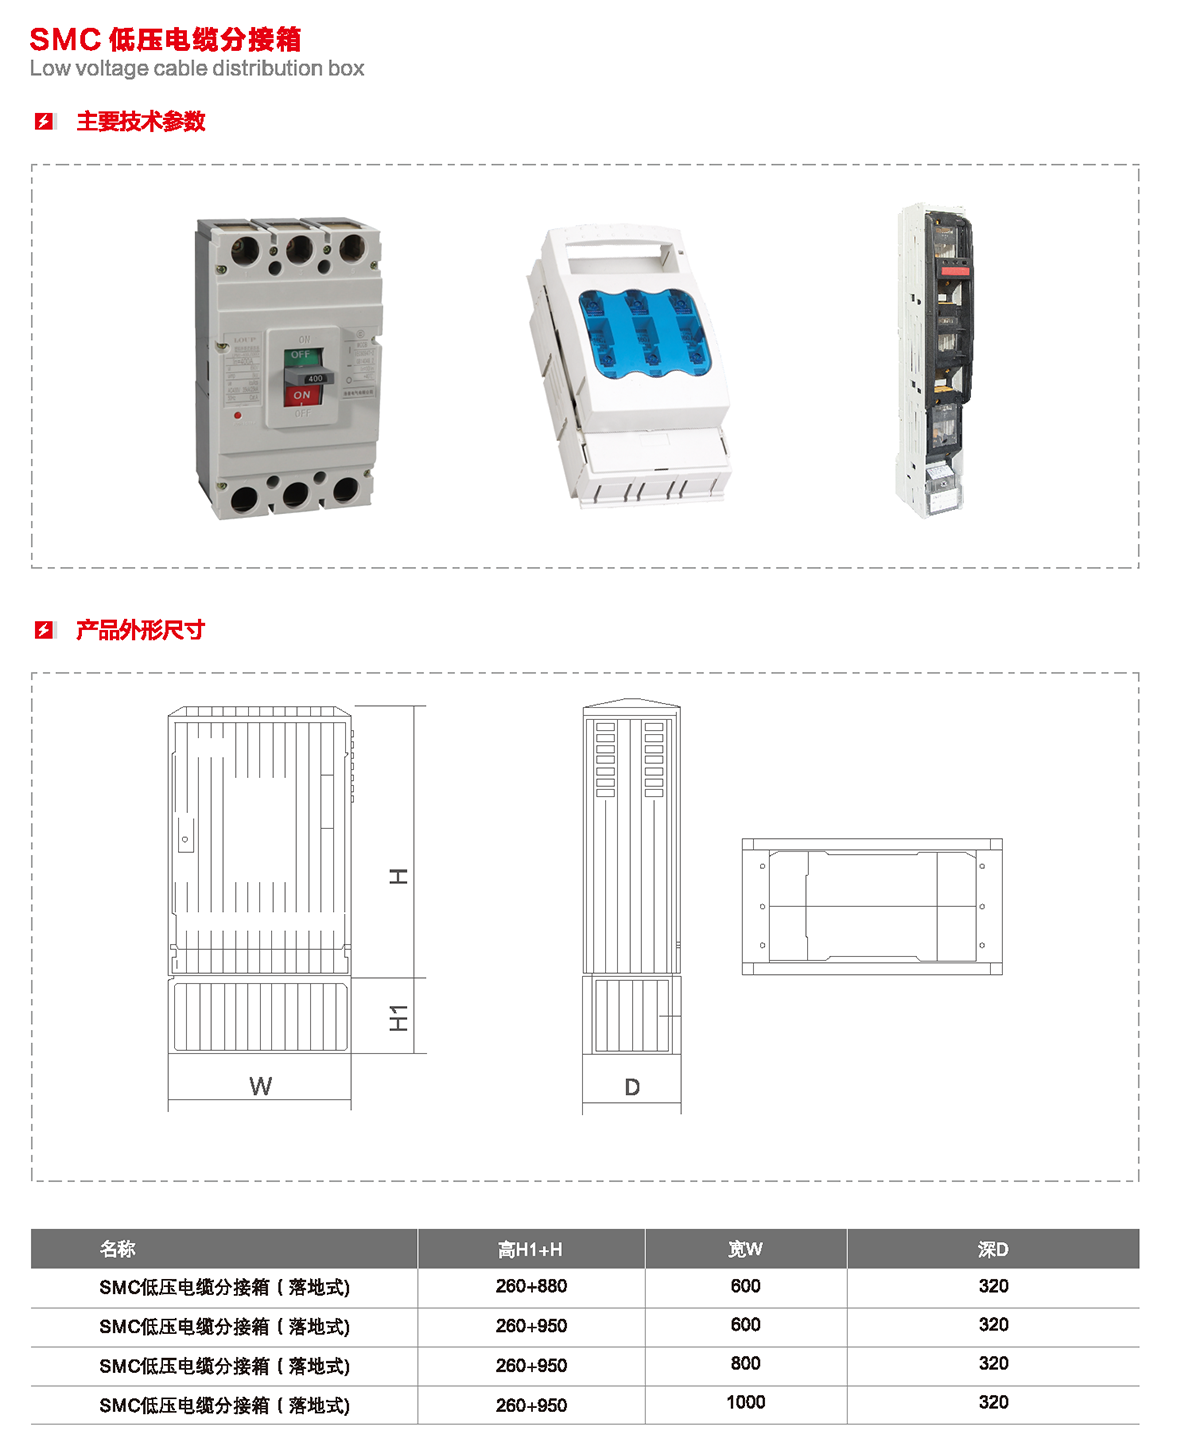 SMC 低压电缆分接箱主要技术参数、产品外形尺寸